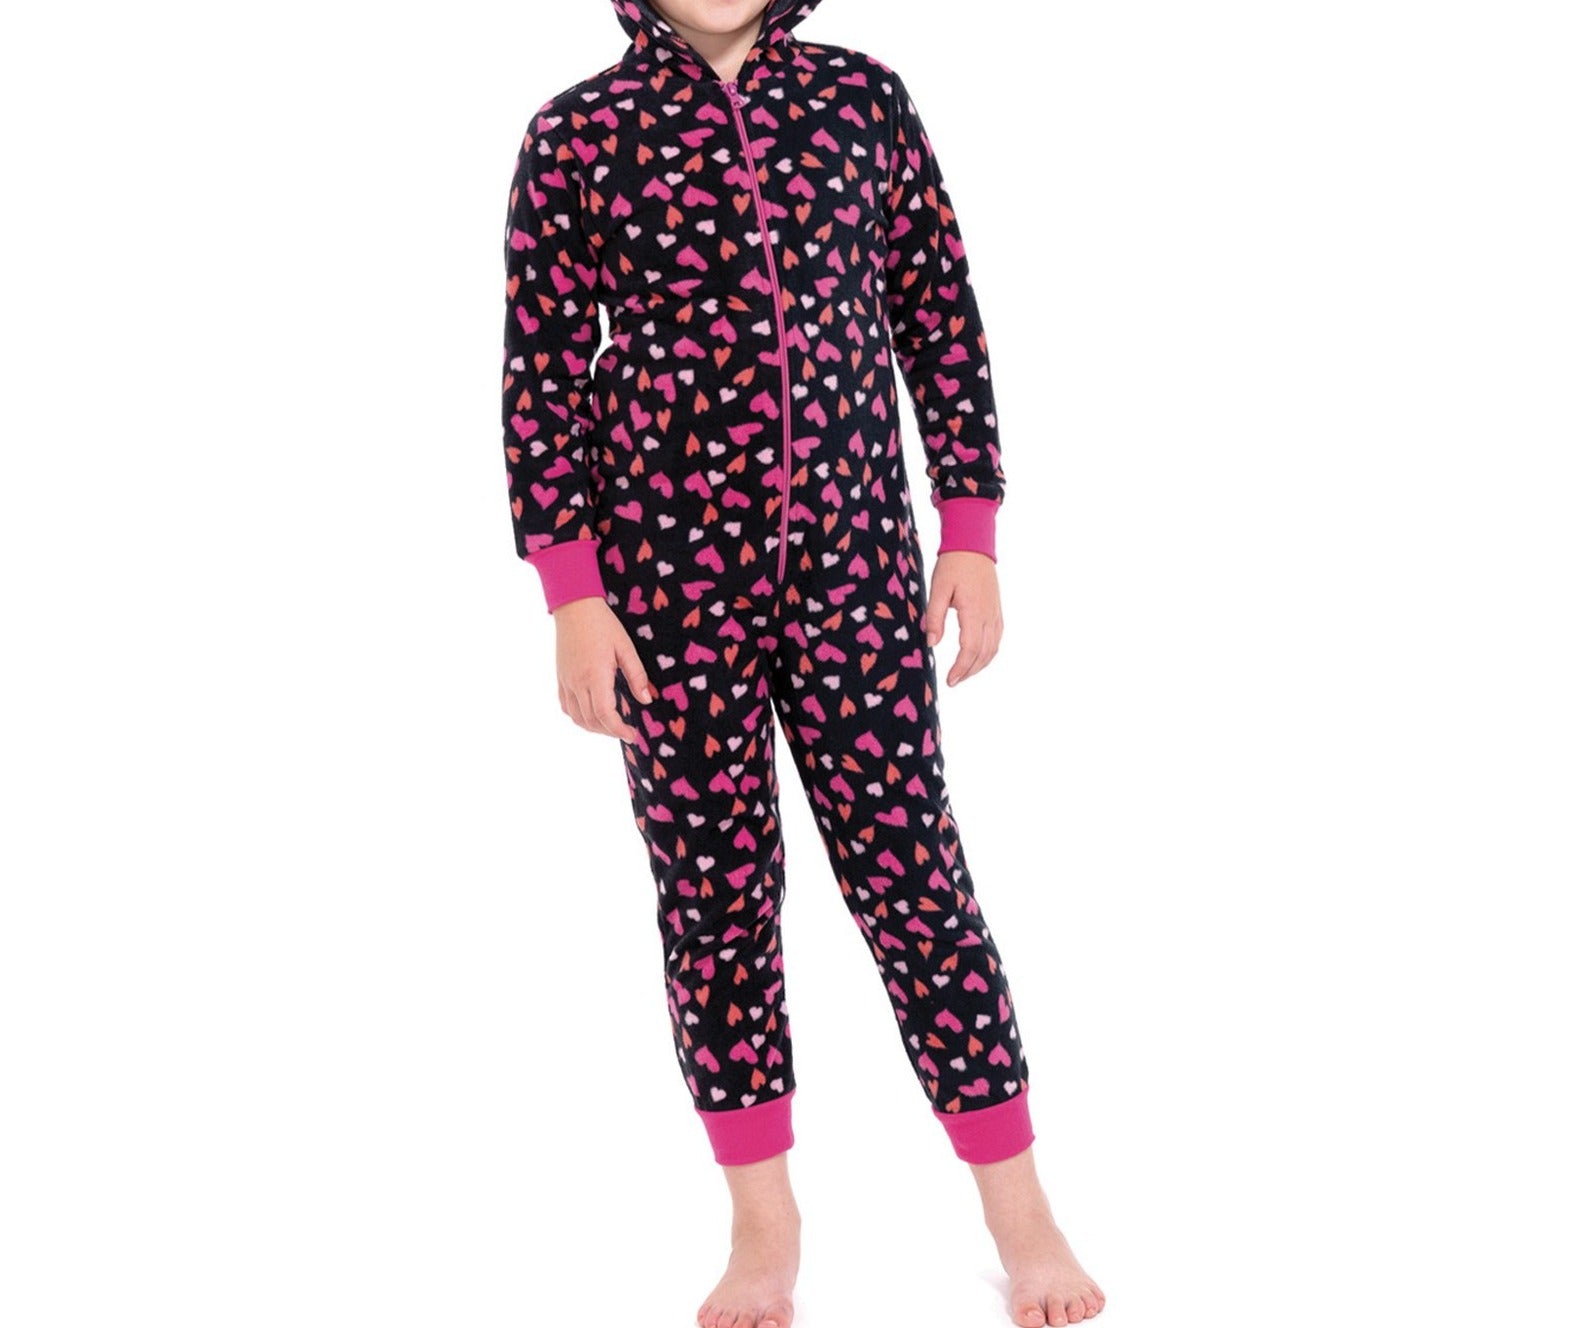 Mono de Pijama con Capucha Estampado de Corazones para Niñas, Negro y Rosa